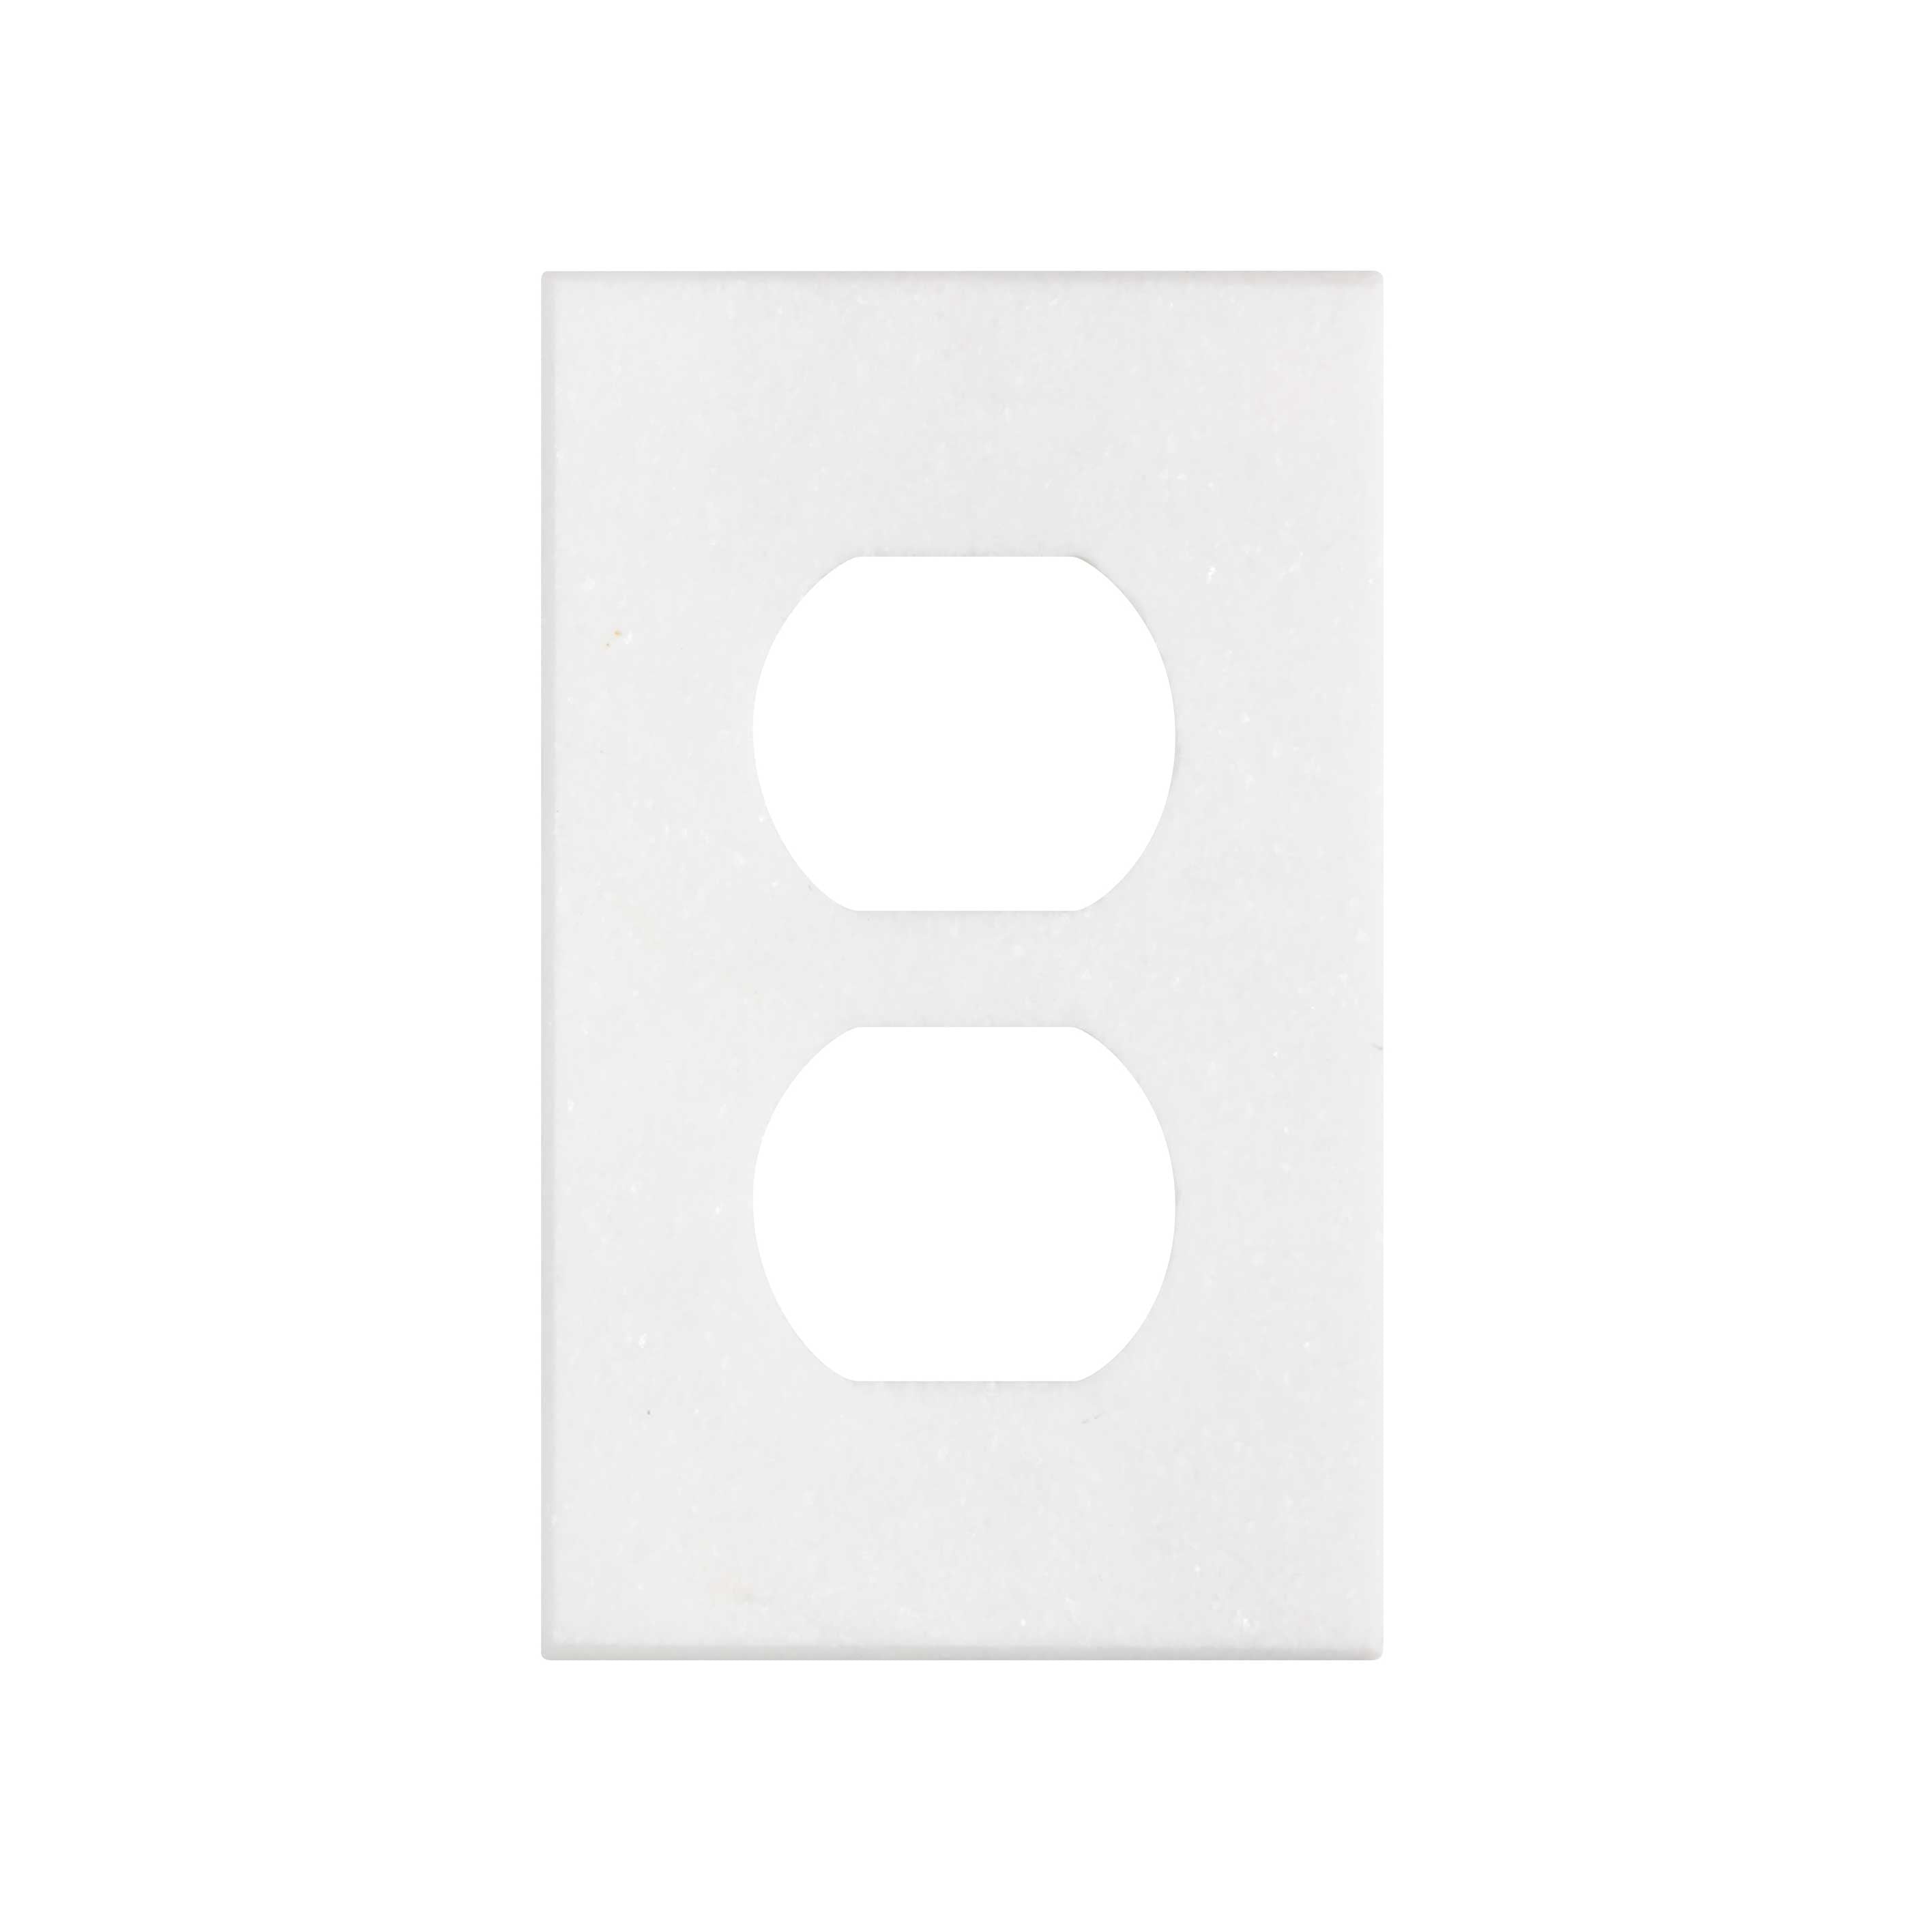 Thassos White (Greek)	Marble	1-DUPLEX	2 3/4" X 4 1/2"